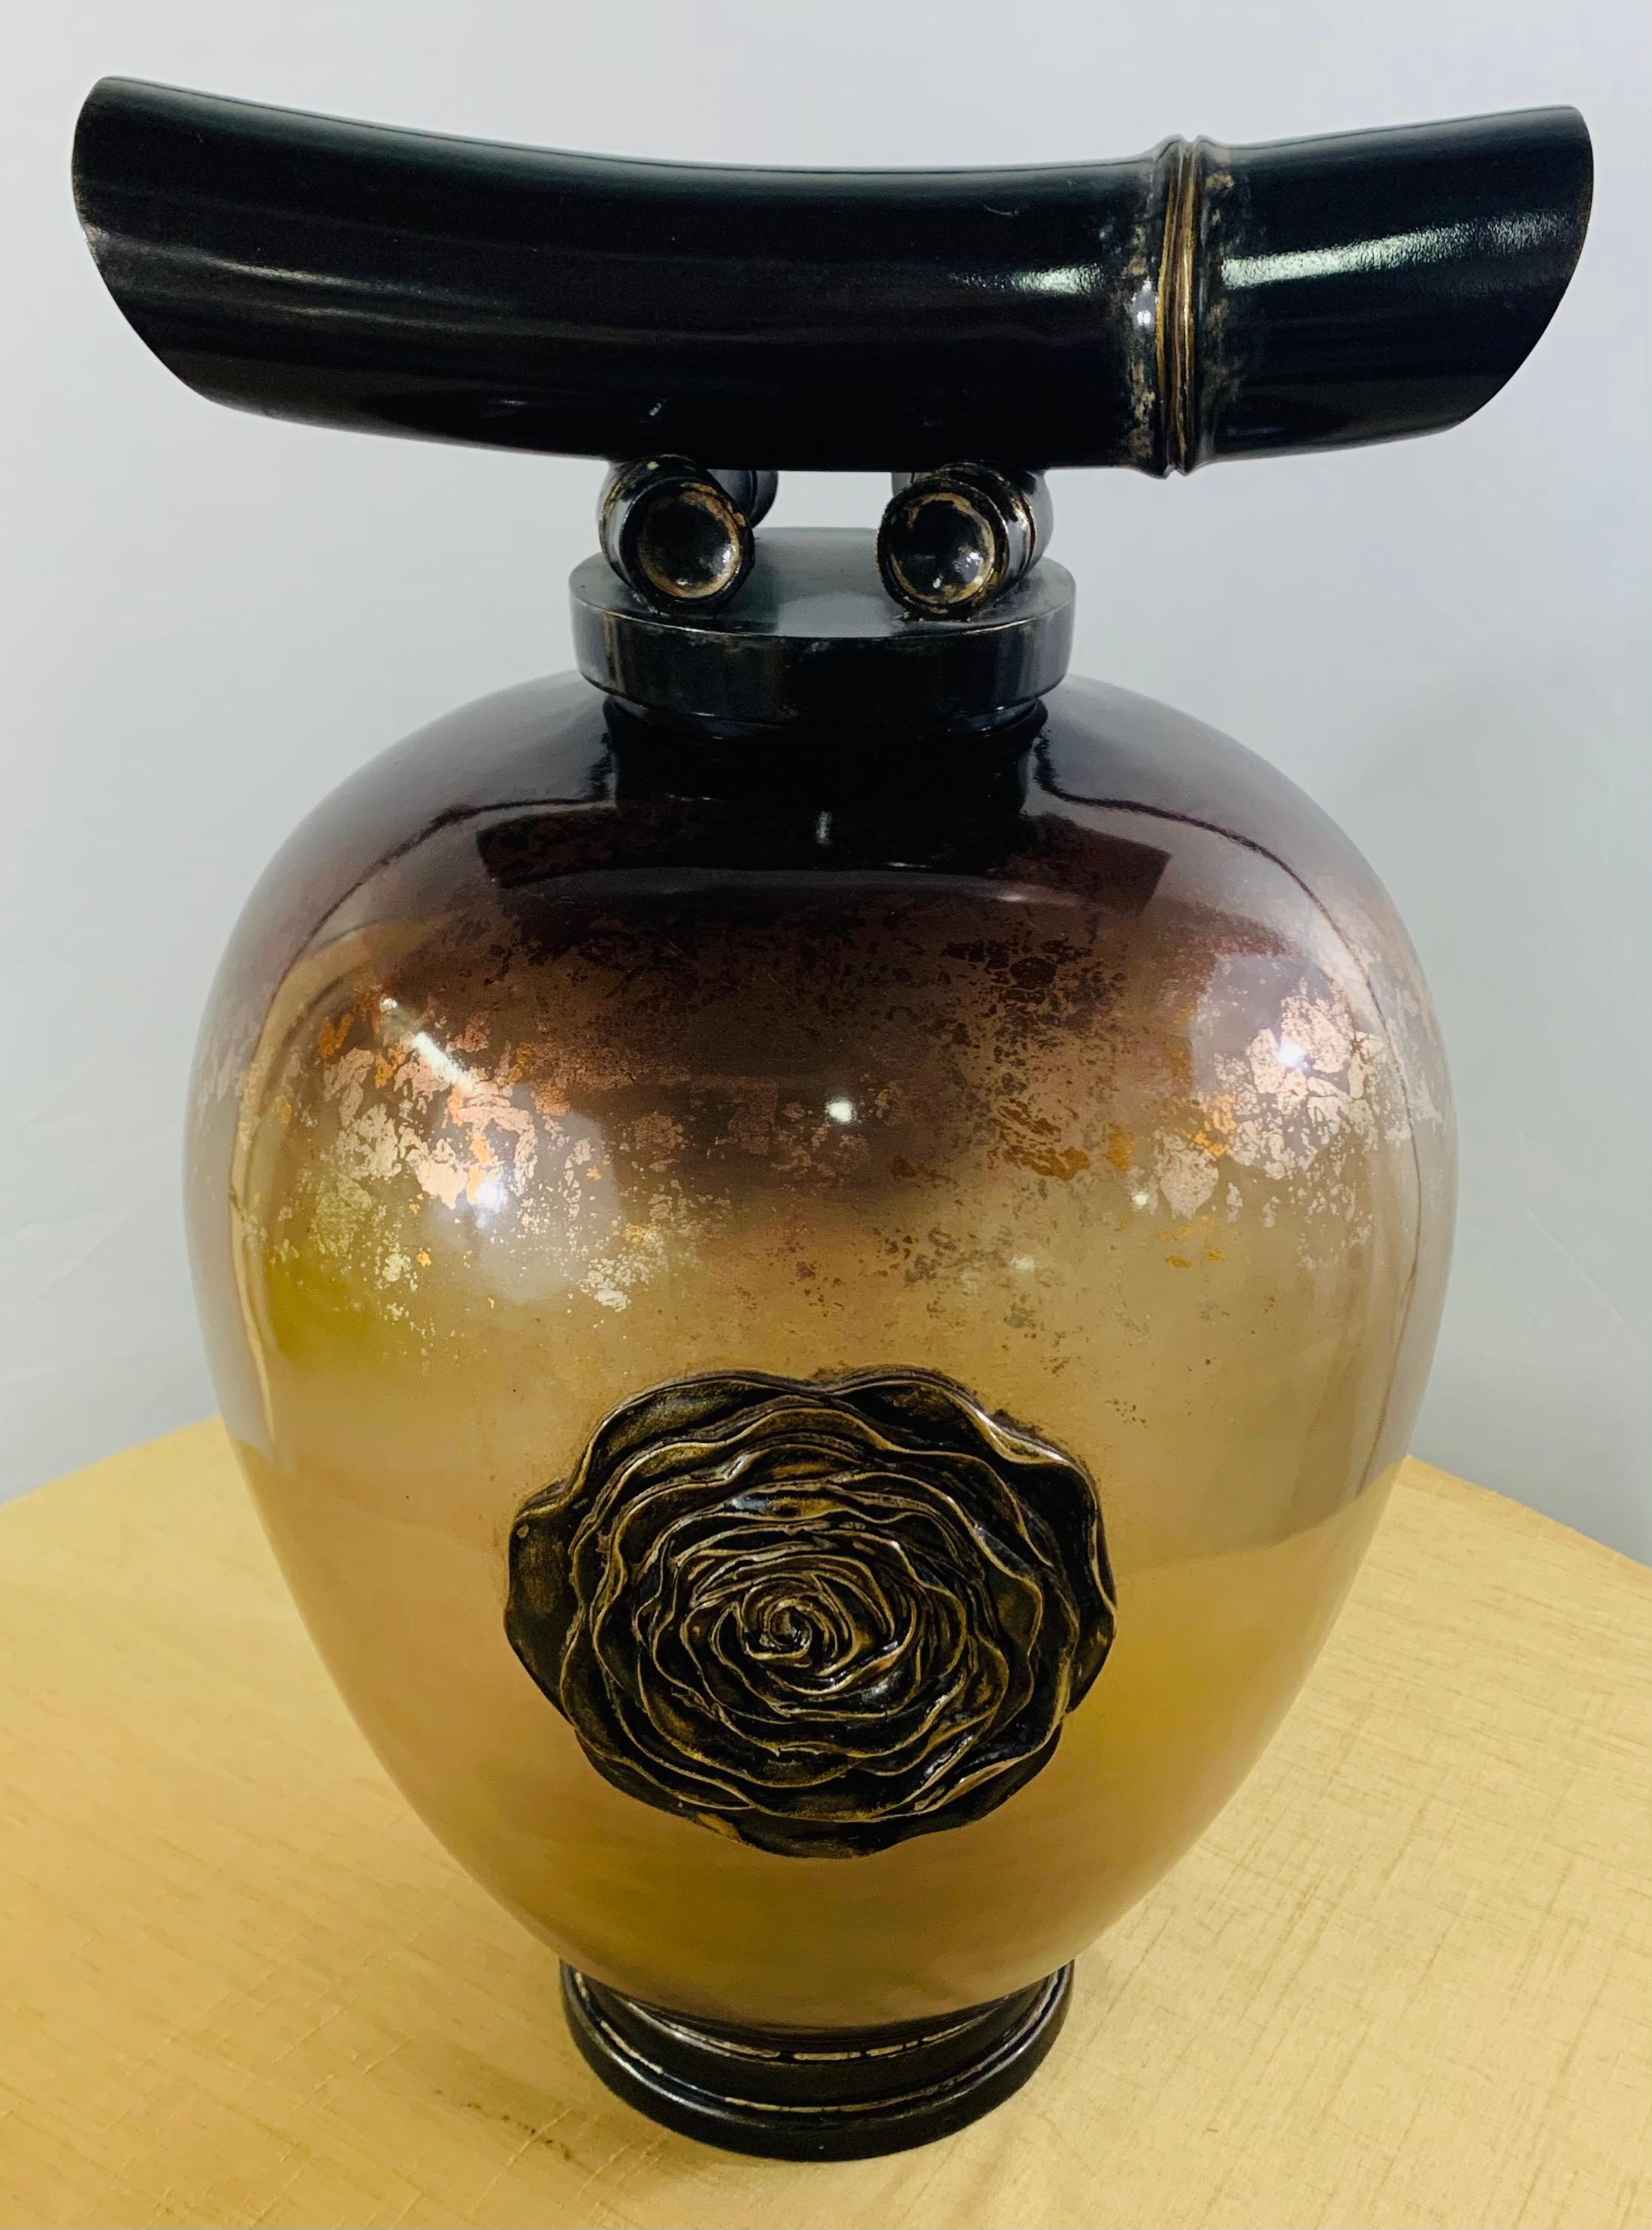 Un vase ou une urne à couvercle en verre ambré asiatique vintage très décoratif. L'urne présente un motif de fleur en laiton fait à la main au centre du vase, une base ronde en bois de couleur noire et décorée de dorures. Le couvercle de l'urne a la